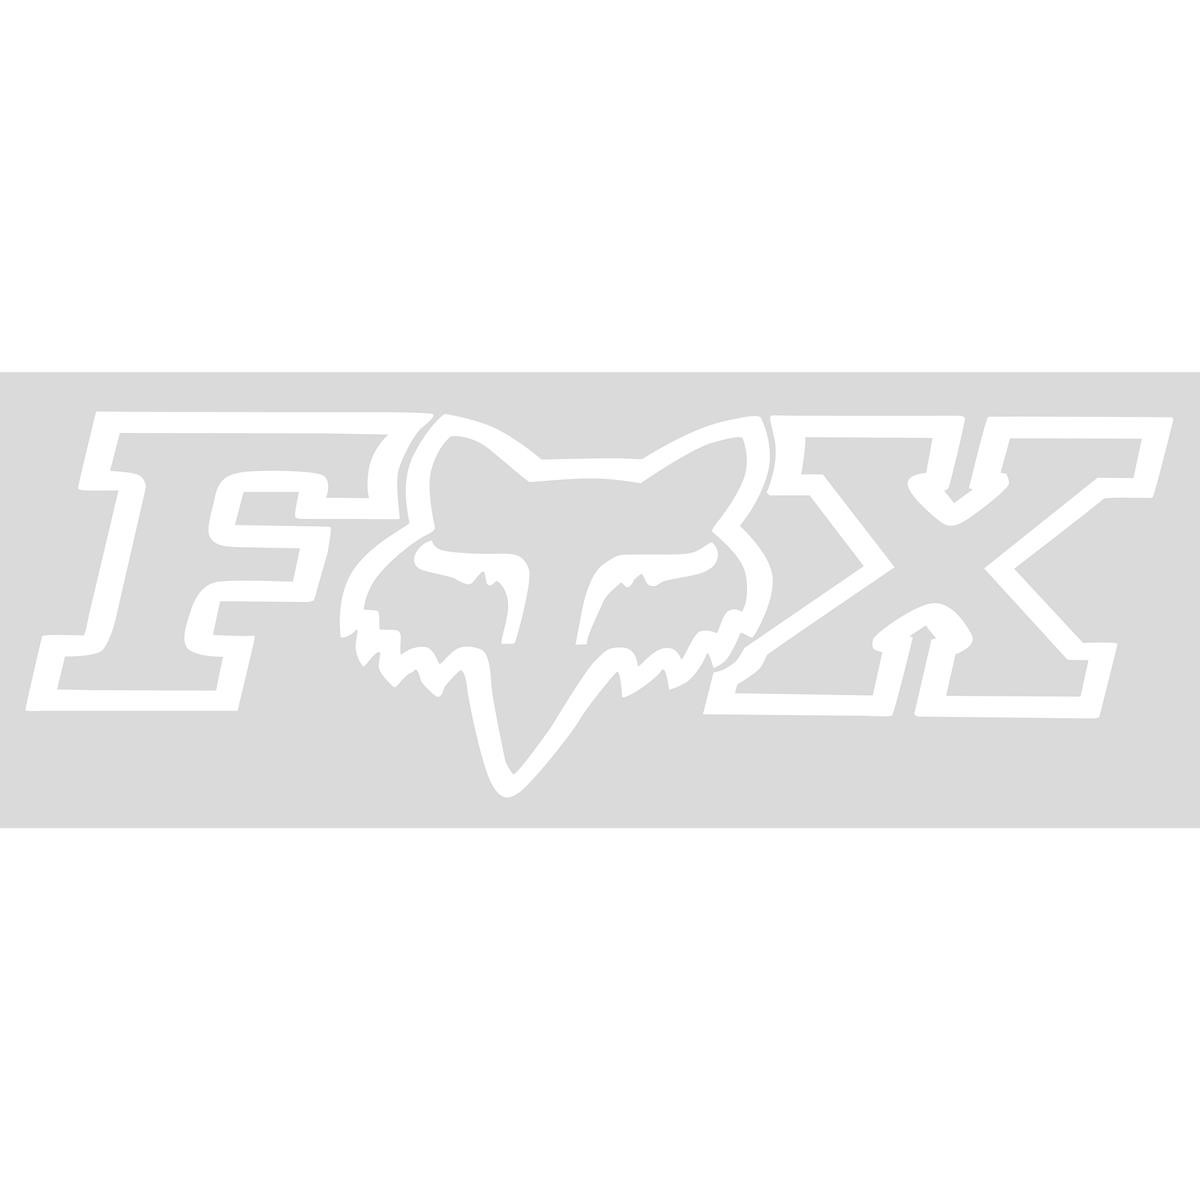 Fox Adesivi Corporate TDC White - 18 cm